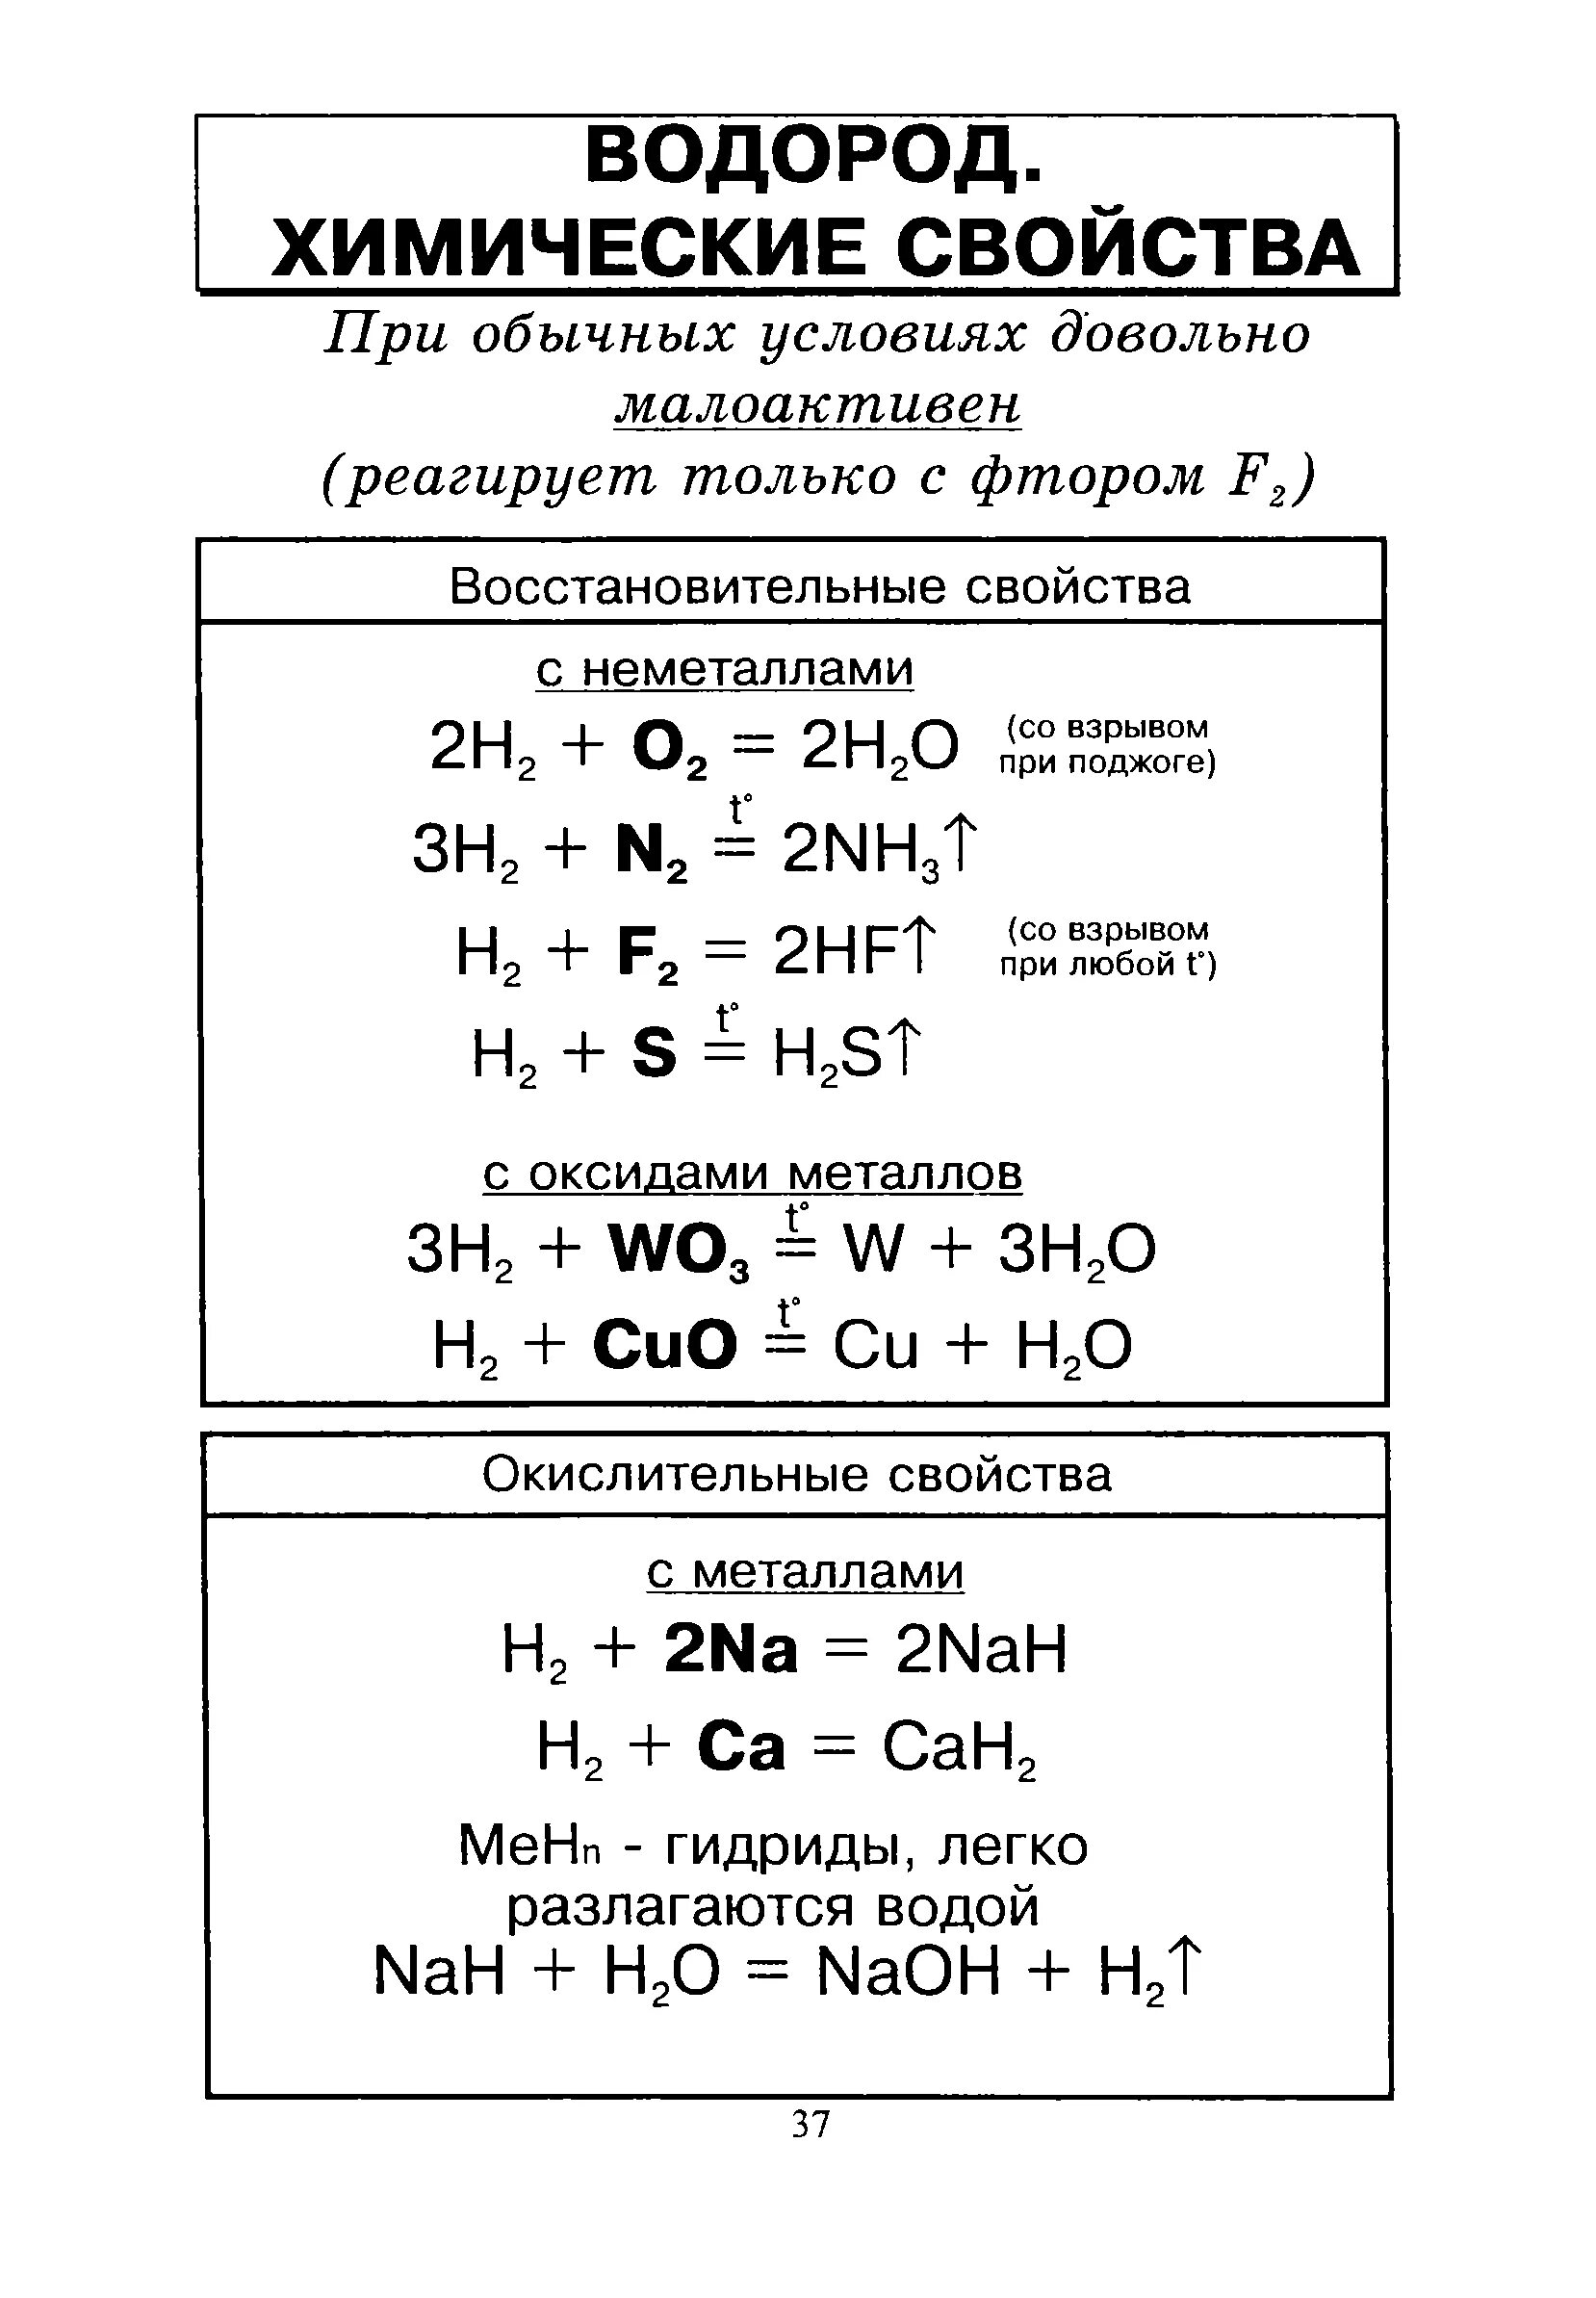 Химические свойства водорода 8 класс химия. Химические свойства водорода 9 класс химия. Химические свойства водорода реакции. Характеристика водорода химические свойства.